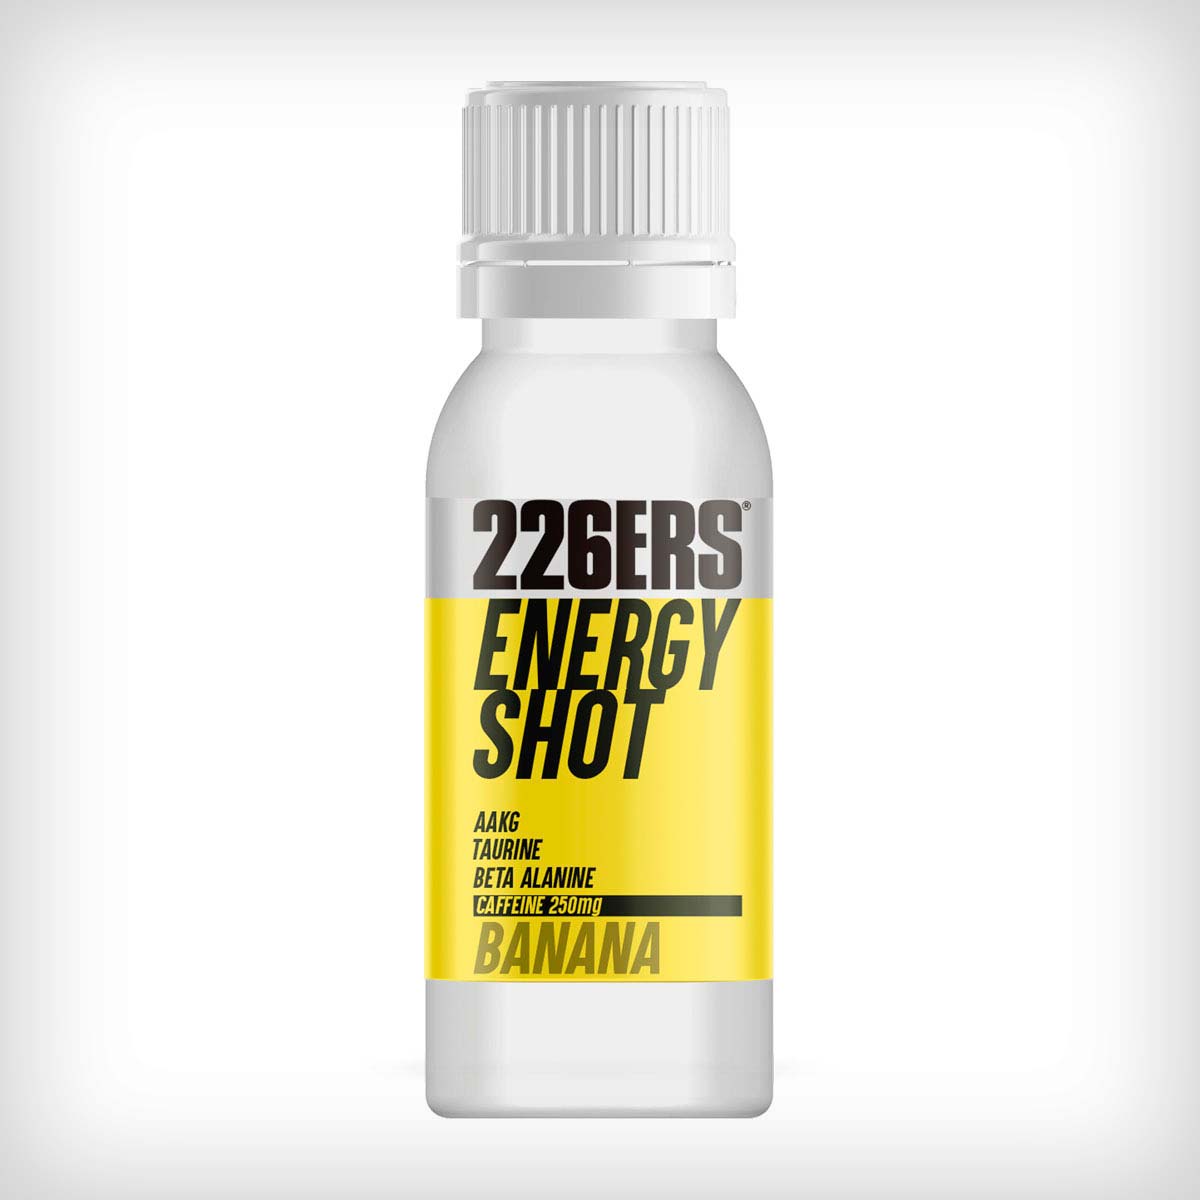 En TodoMountainBike: Energy Shot de 226ERS, un chute de energía instantánea para reducir la fatiga durante los entrenos y las competiciones